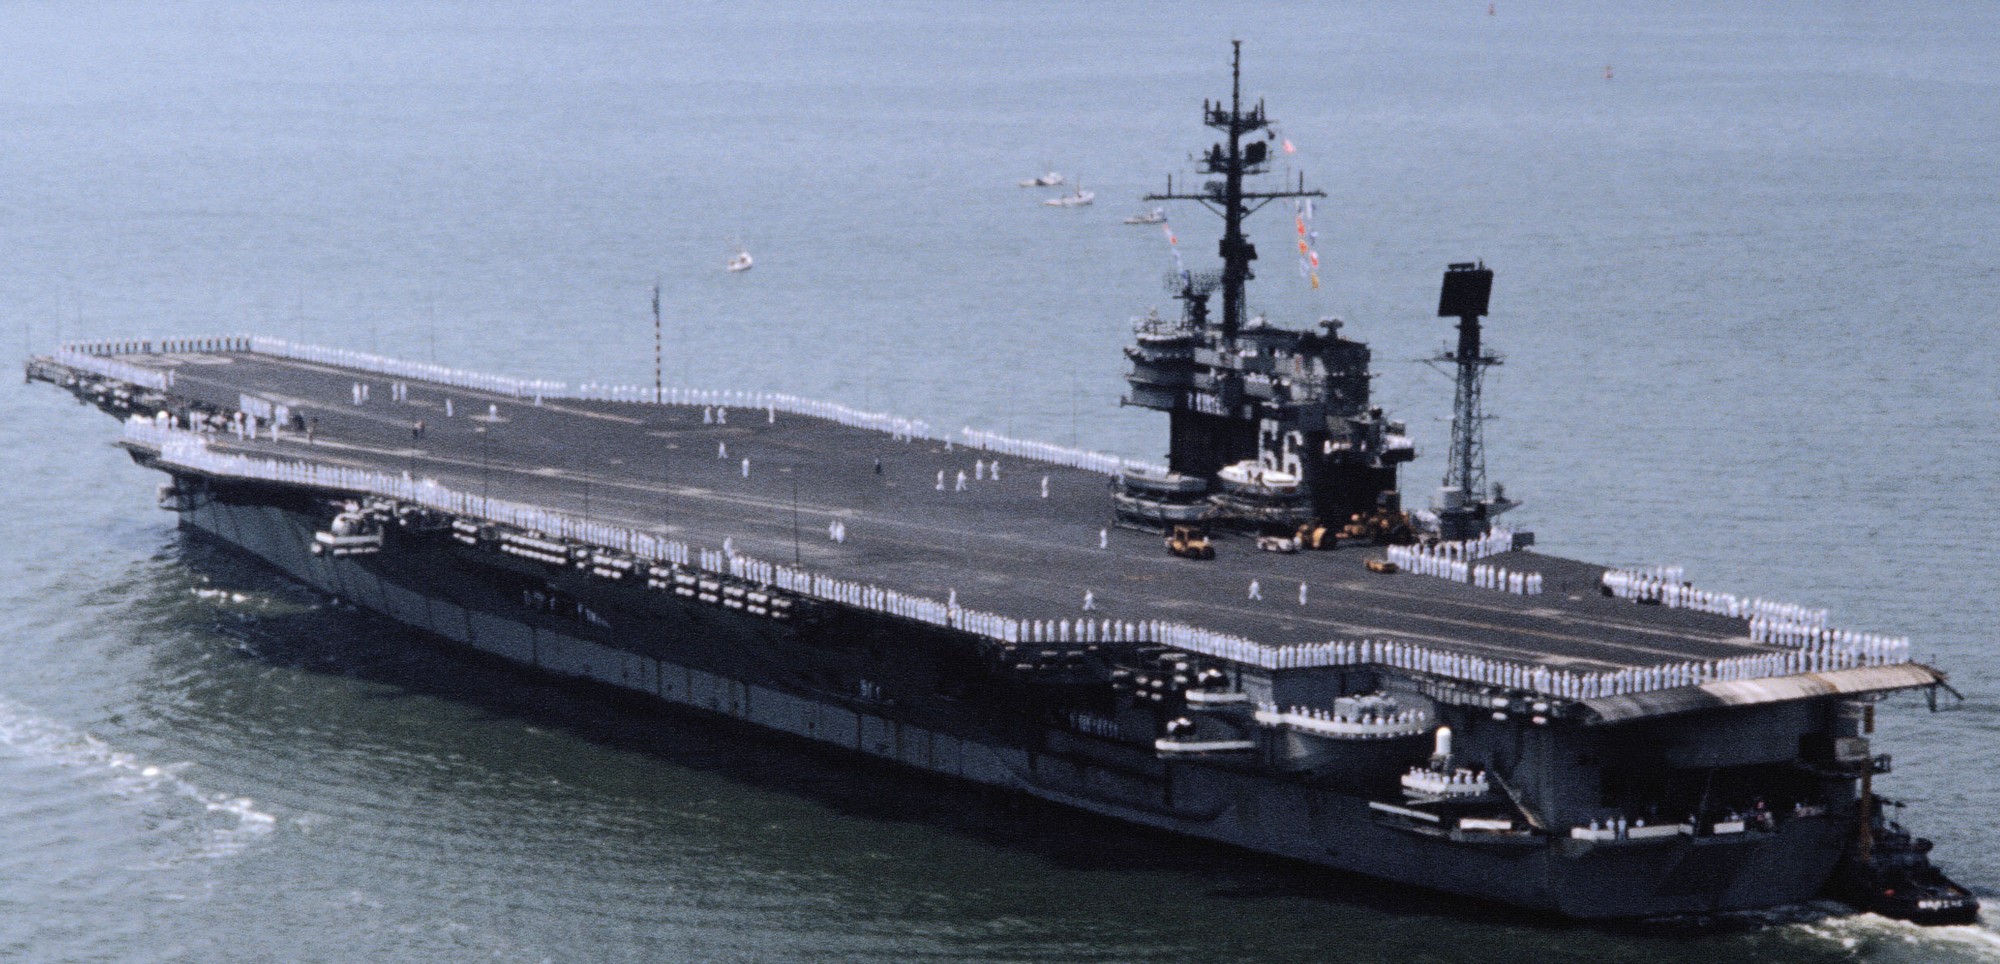 cv-66 uss america kitty hawk class aircraft carrier us navy norfolk virginia 1982 45